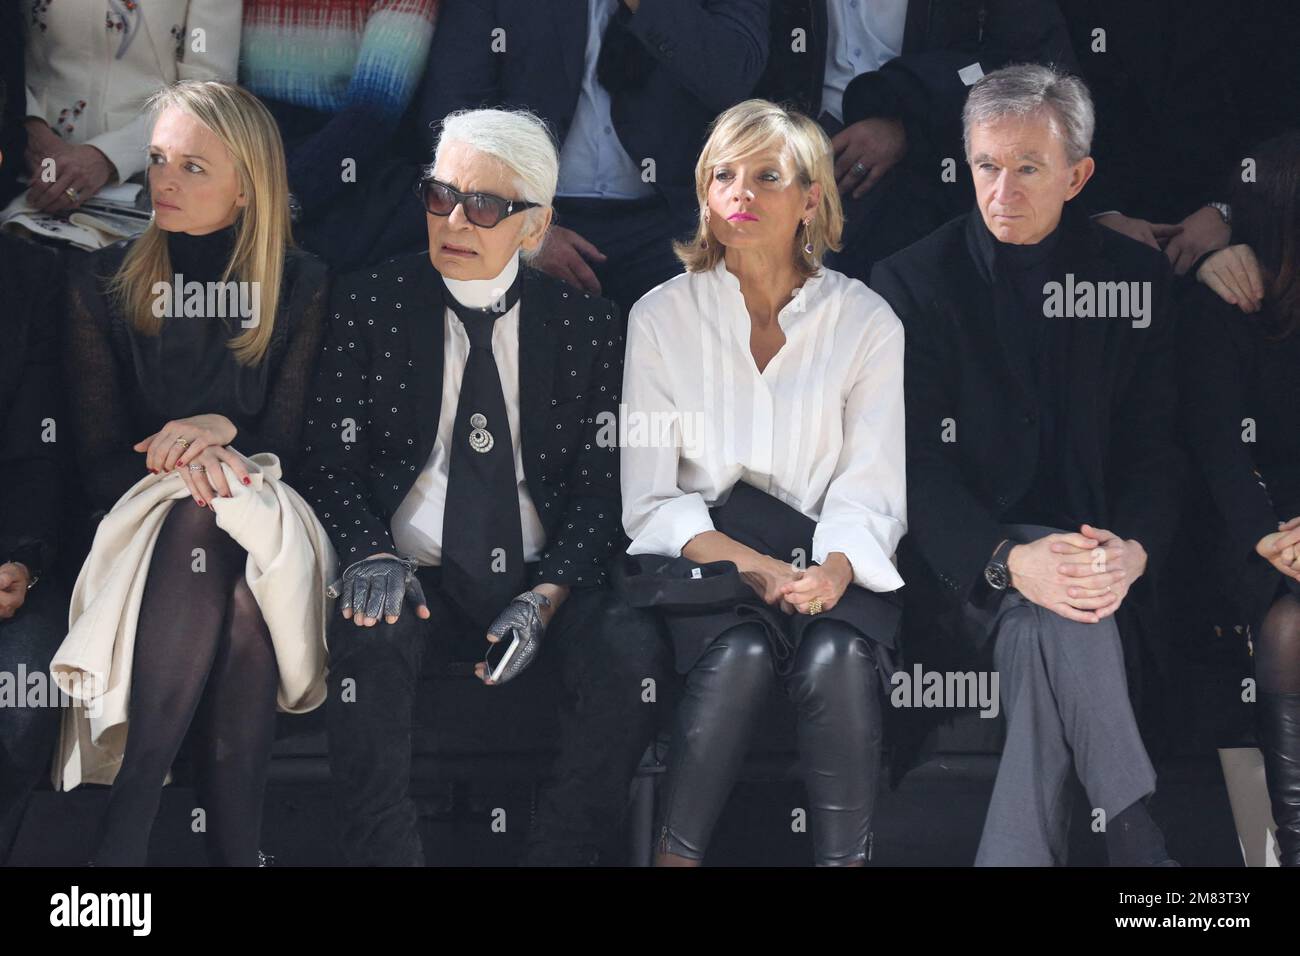 World's richest man Bernard Arnault picks daughter Delphine to run Dior